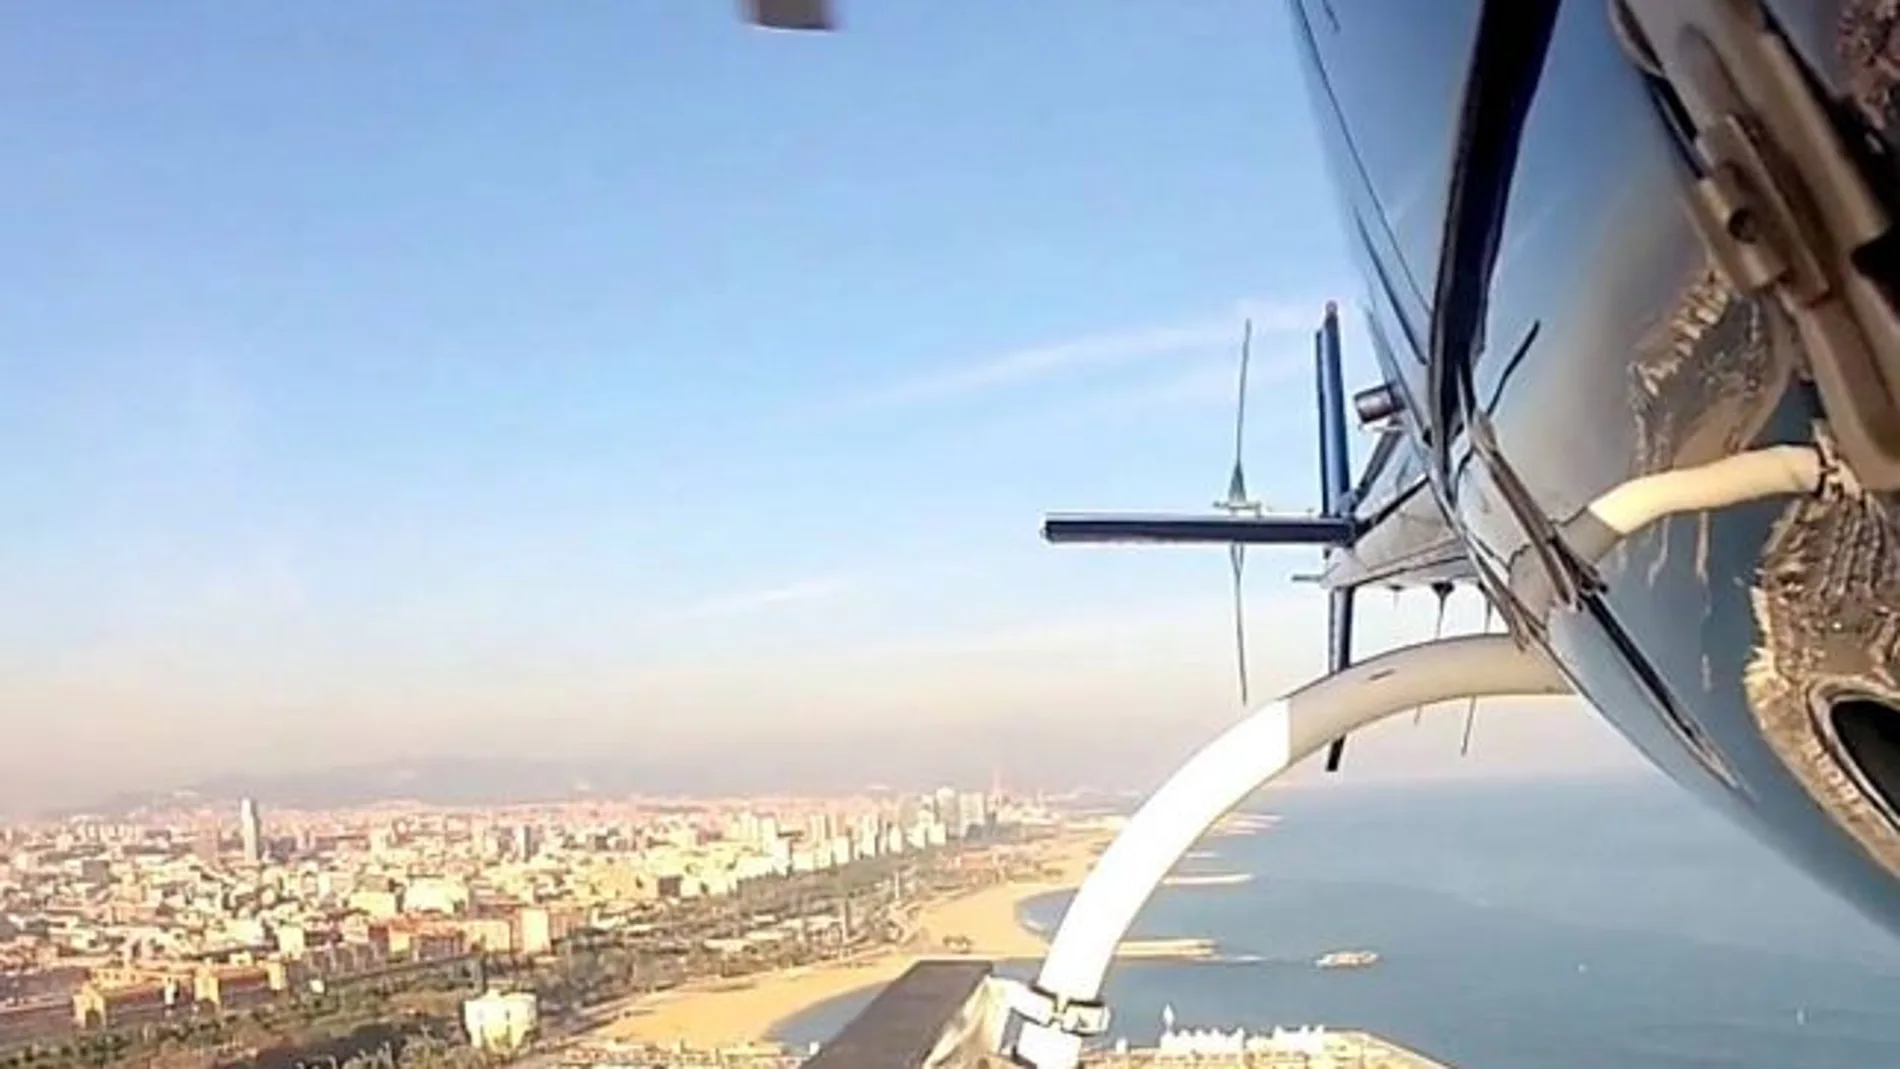 El helicóptero sobrevoló zonas de Barcelona cercanas a la playa